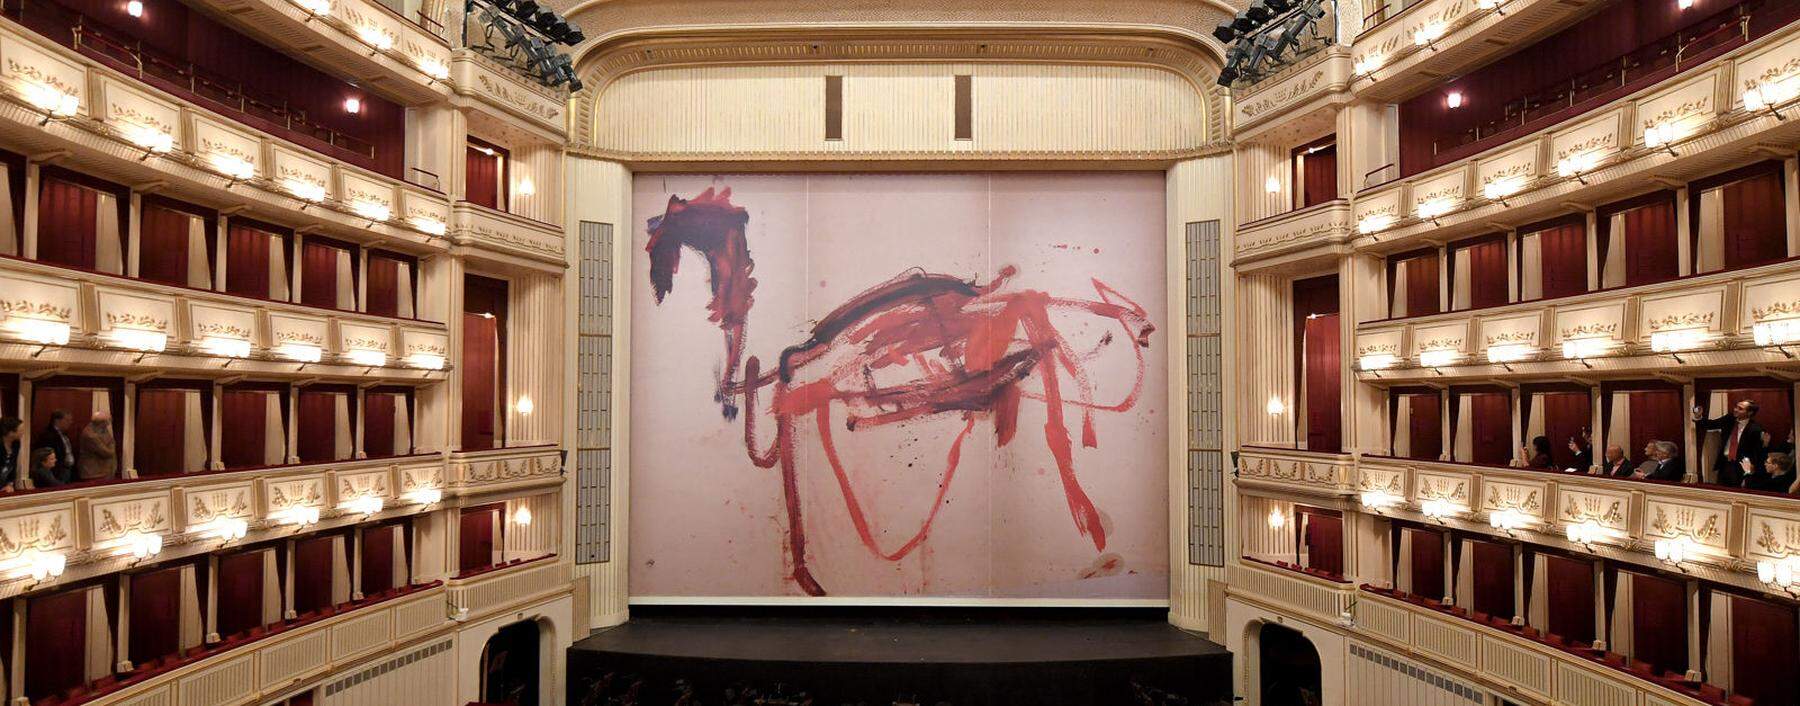 Das von Martha Jungwirth gestaltete trojanische Pferd am Eisernen Vorhang der Wiener Staatsoper.